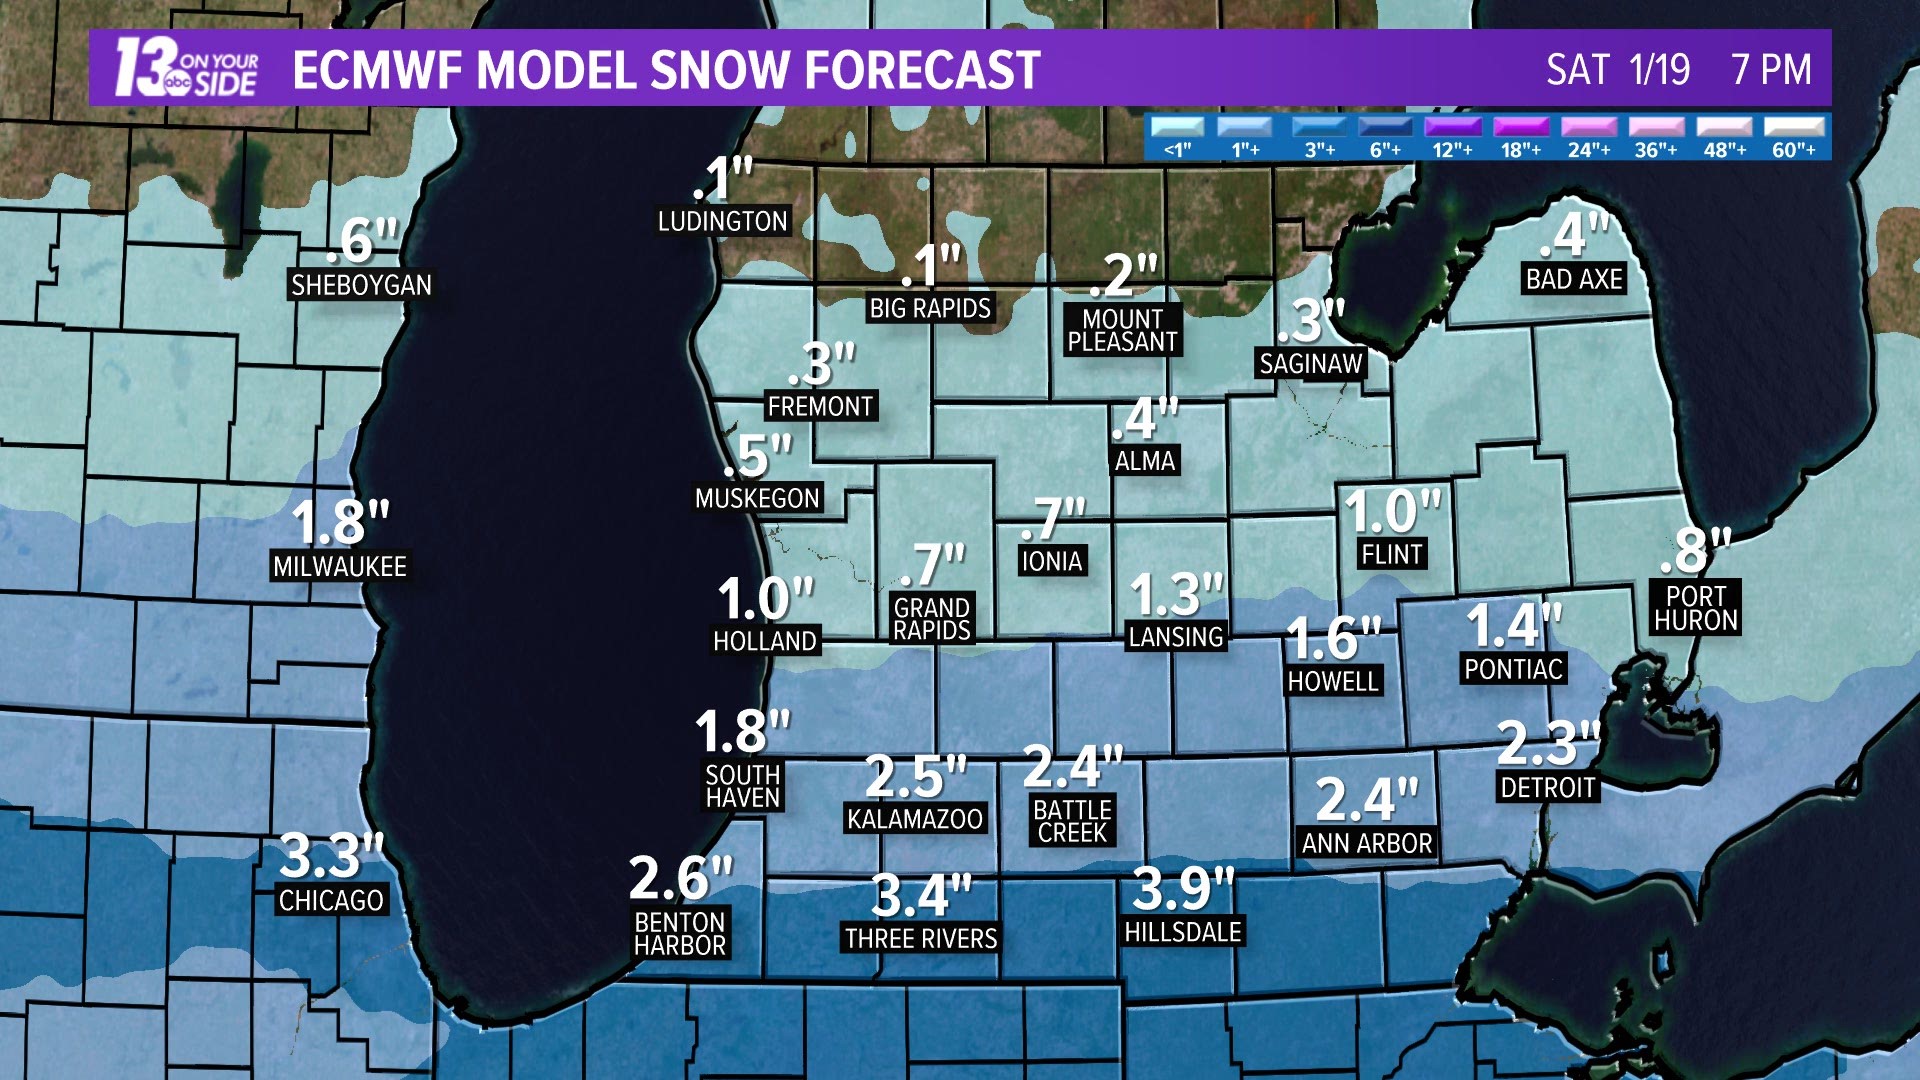 snowfall prediction models